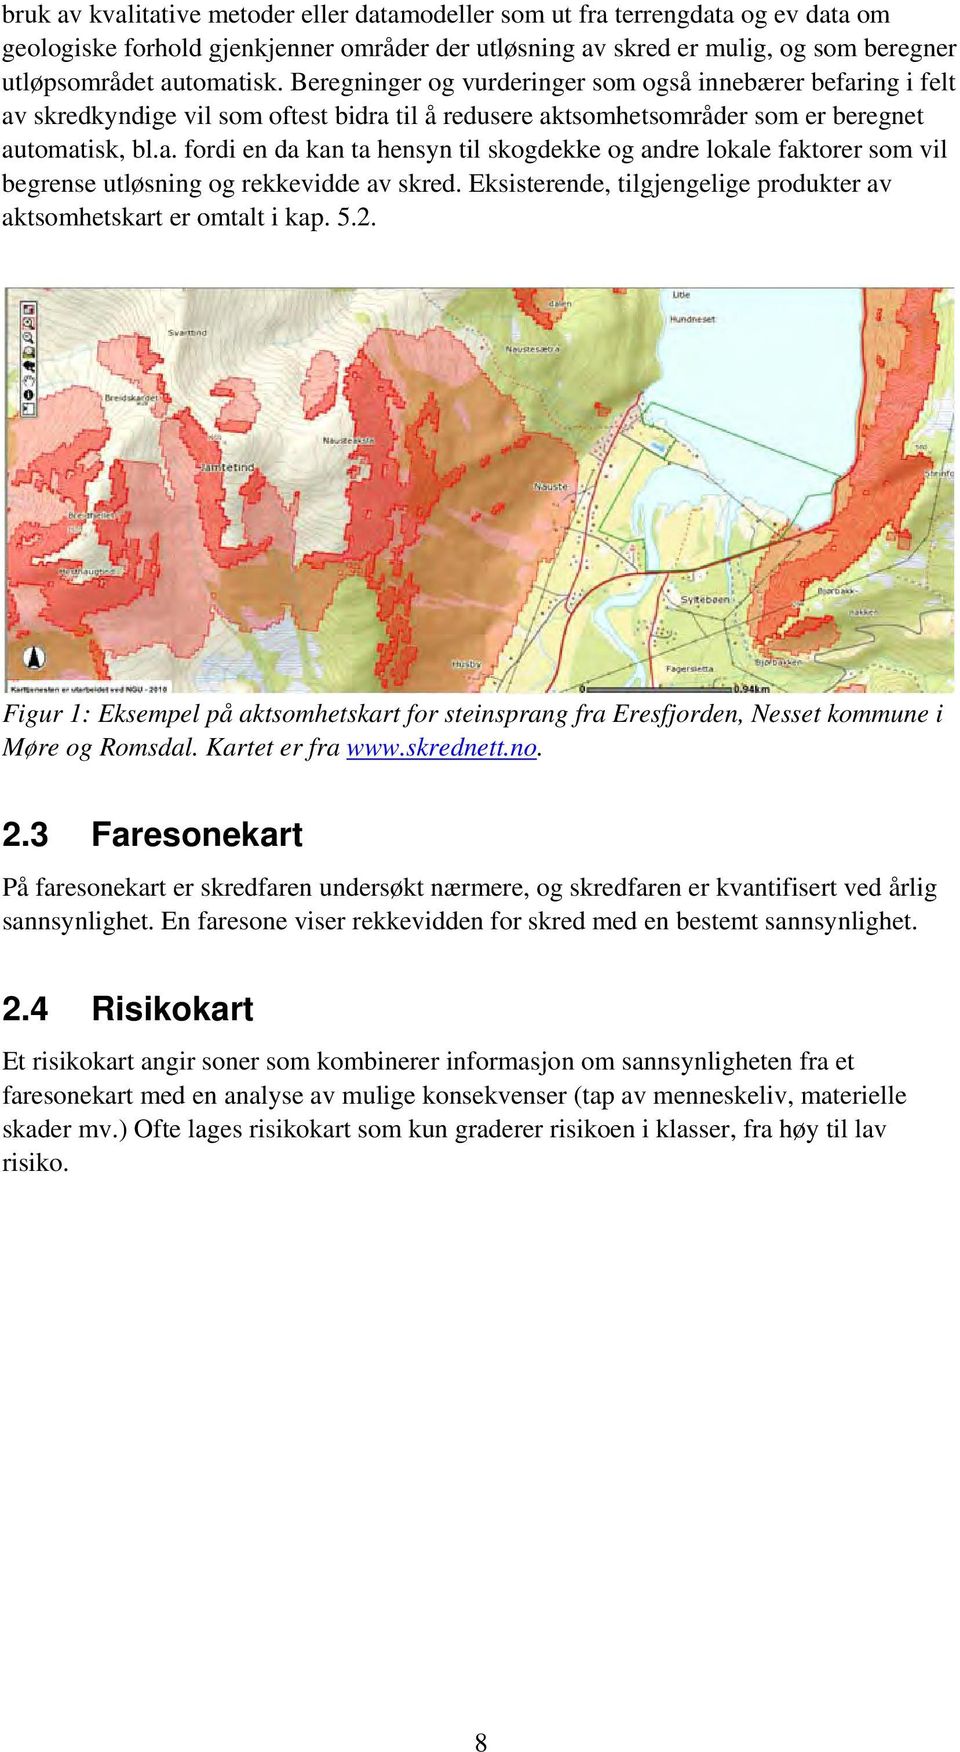 Eksisterende, tilgjengelige produkter av aktsomhetskart er omtalt i kap. 5.2. Figur 1: Eksempel på aktsomhetskart for steinsprang fra Eresfjorden, Nesset kommune i Møre og Romsdal. Kartet er fra www.